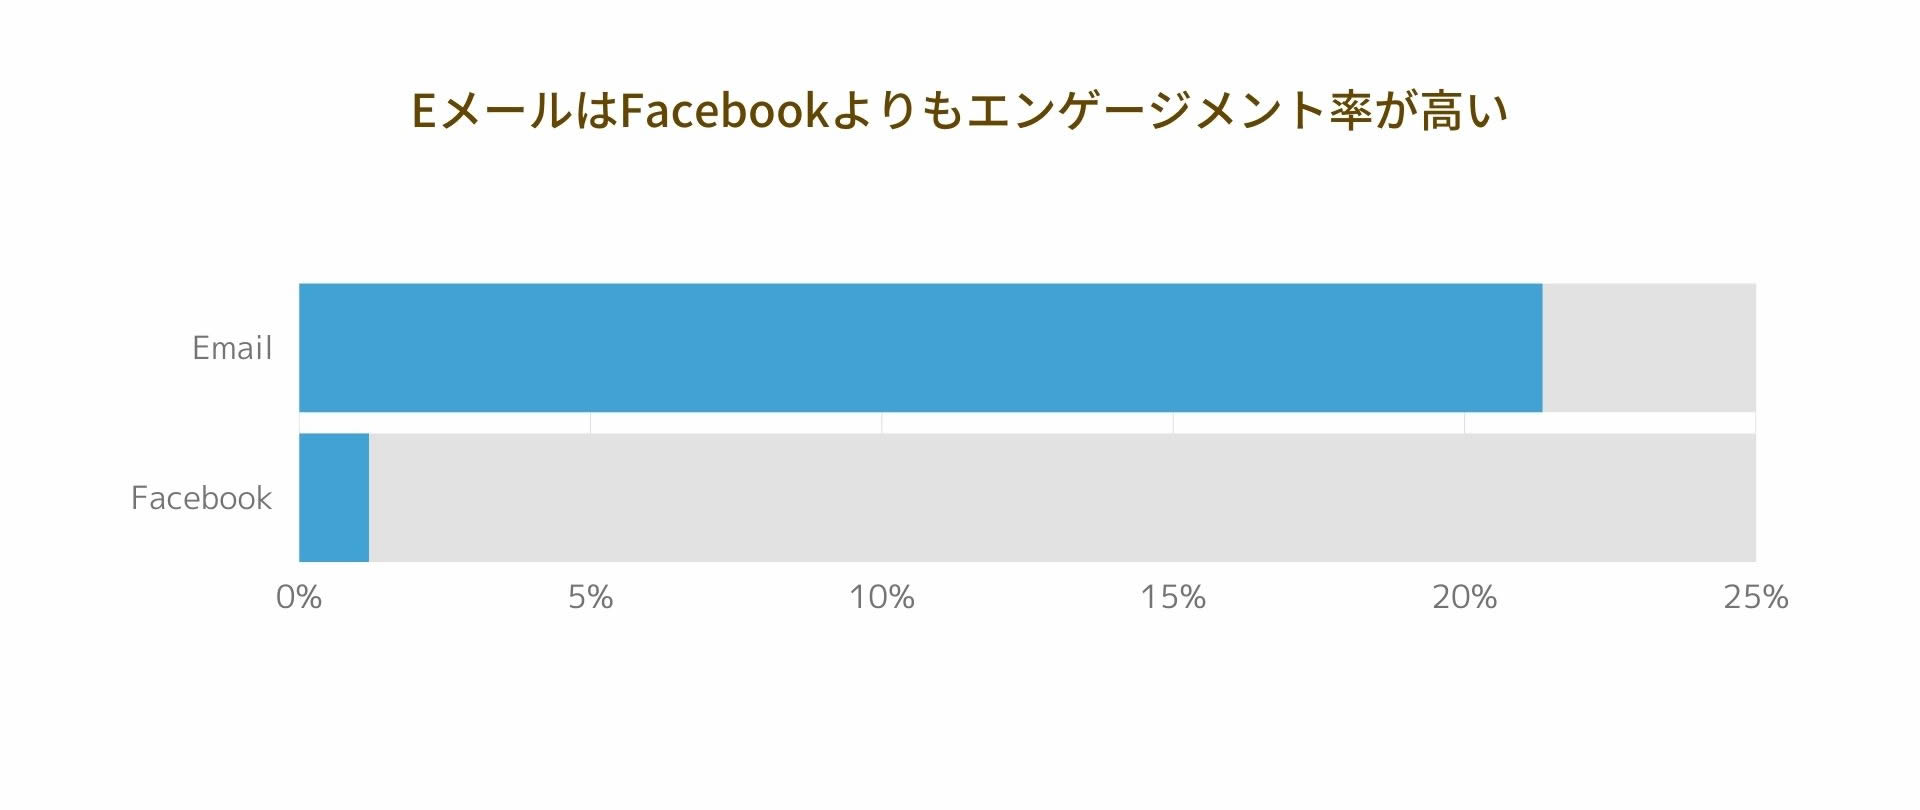 ニュースレターの平均開封率は 21.33% で、Facebook の投稿エンゲージメント